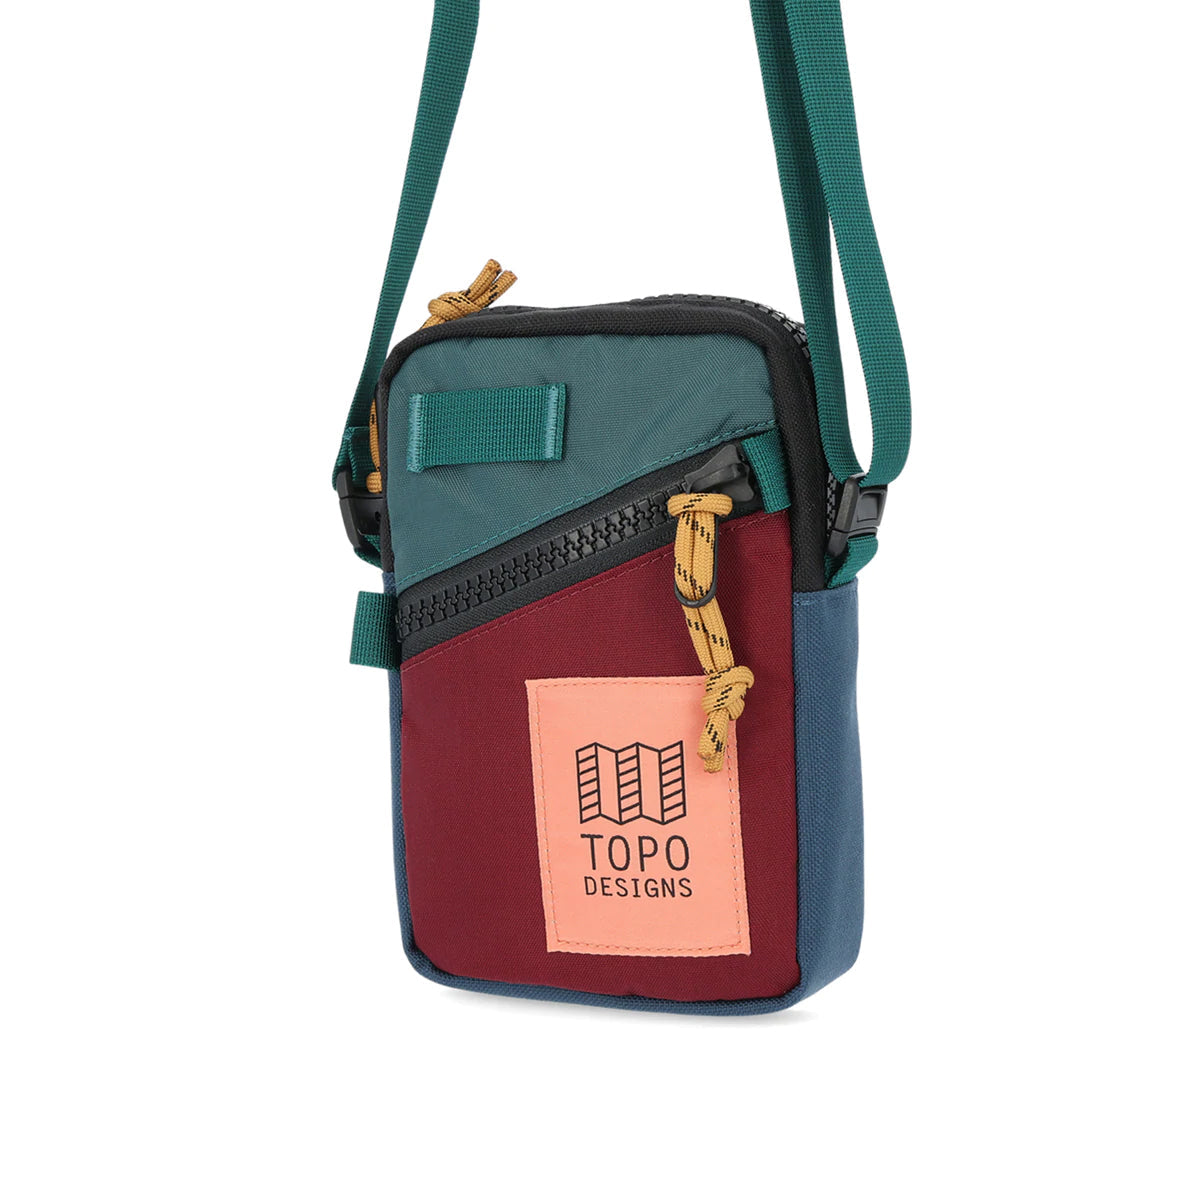 Topo Designs : Mini Shoulder Bag : Zinfandel/Botanic Green